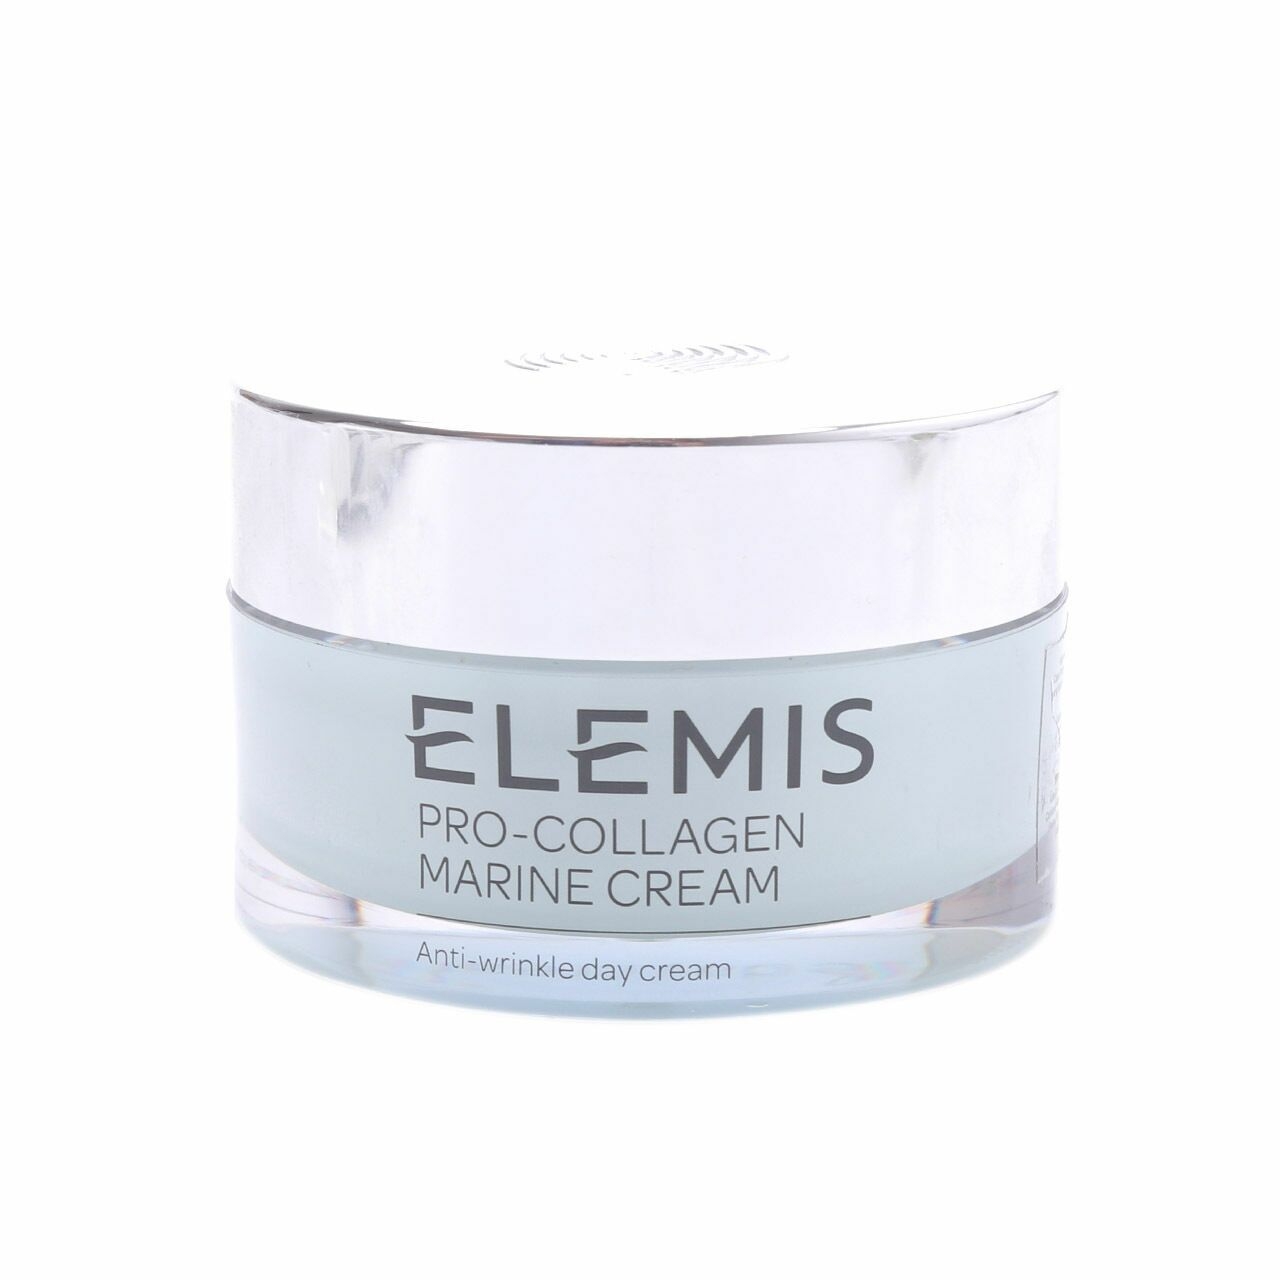 Elemis Pro-Collagen Marine Cream Skin Care